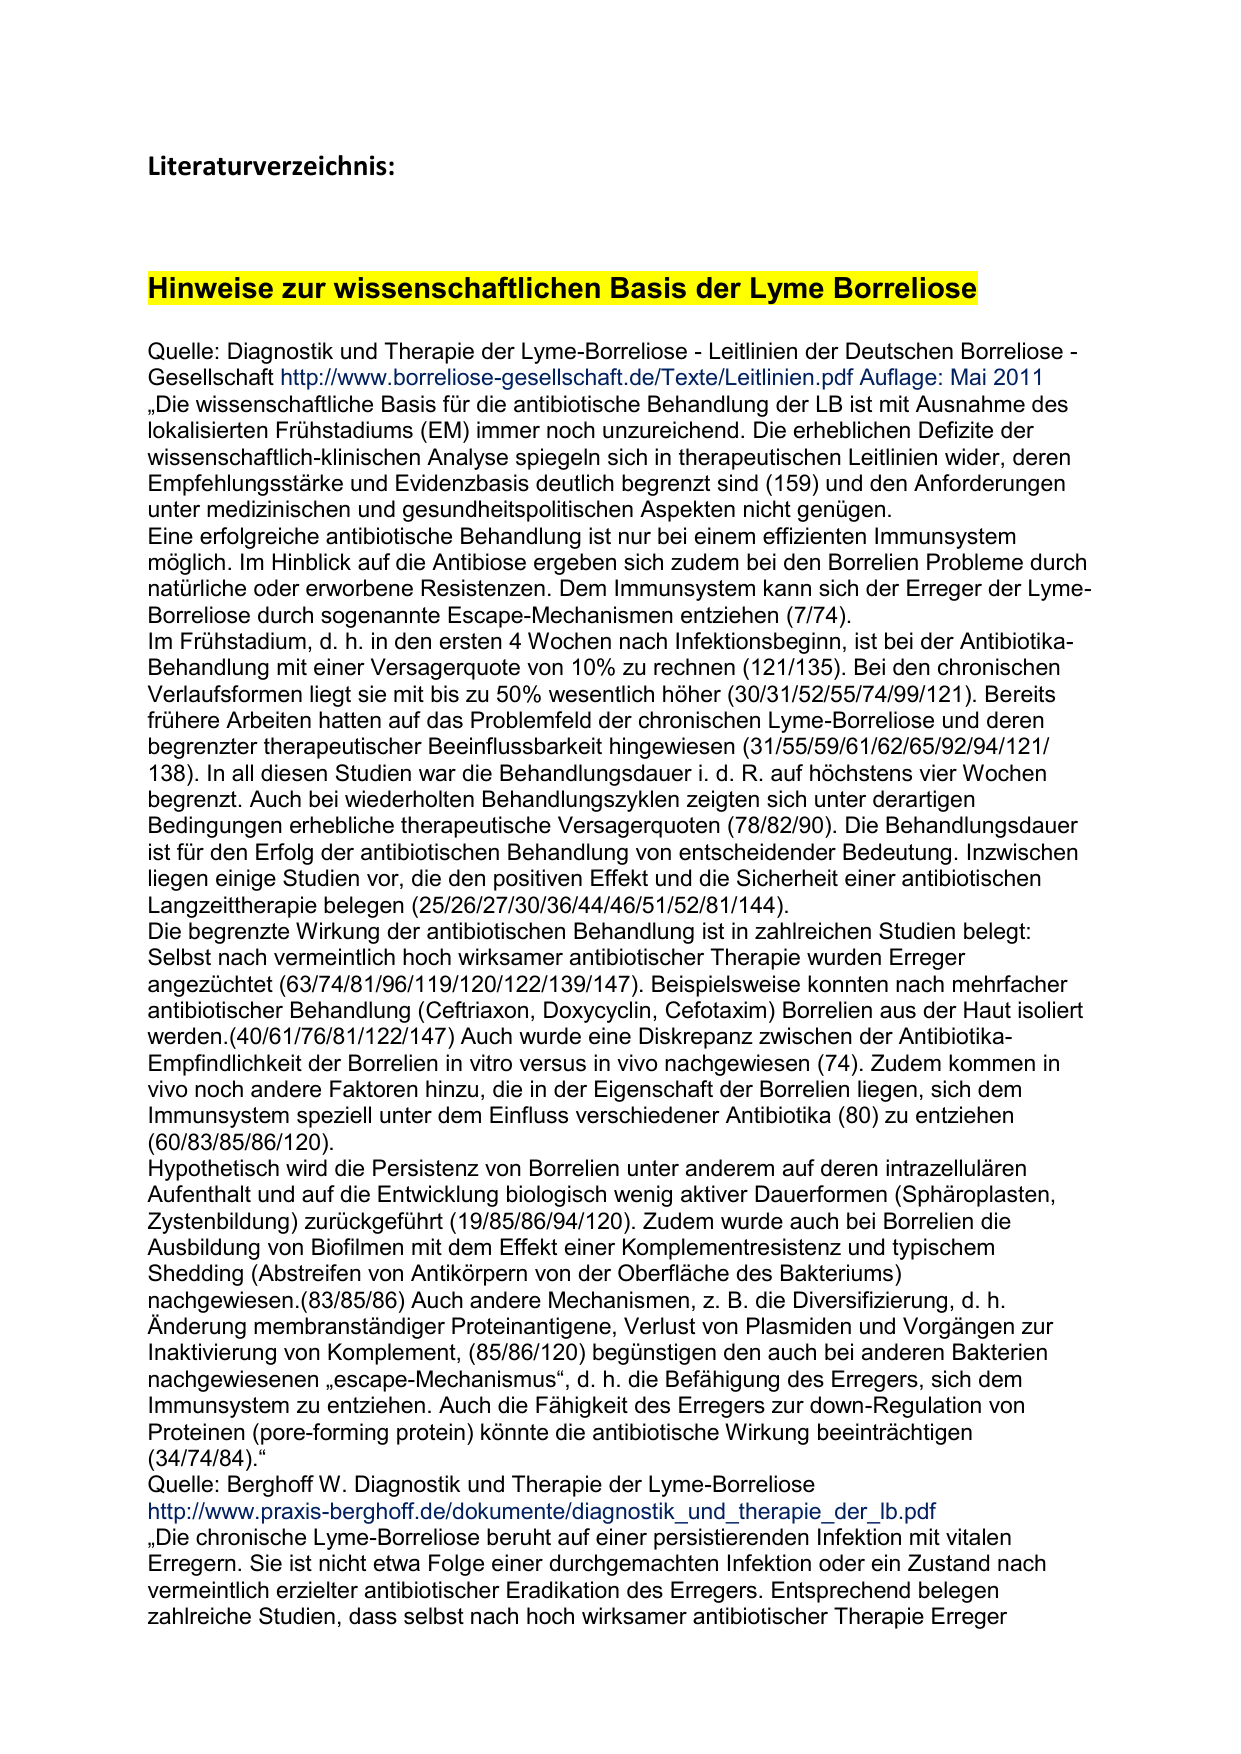 Persistence Of Borrelia Burgdorferi Sensu Lato In Patients With Lyme